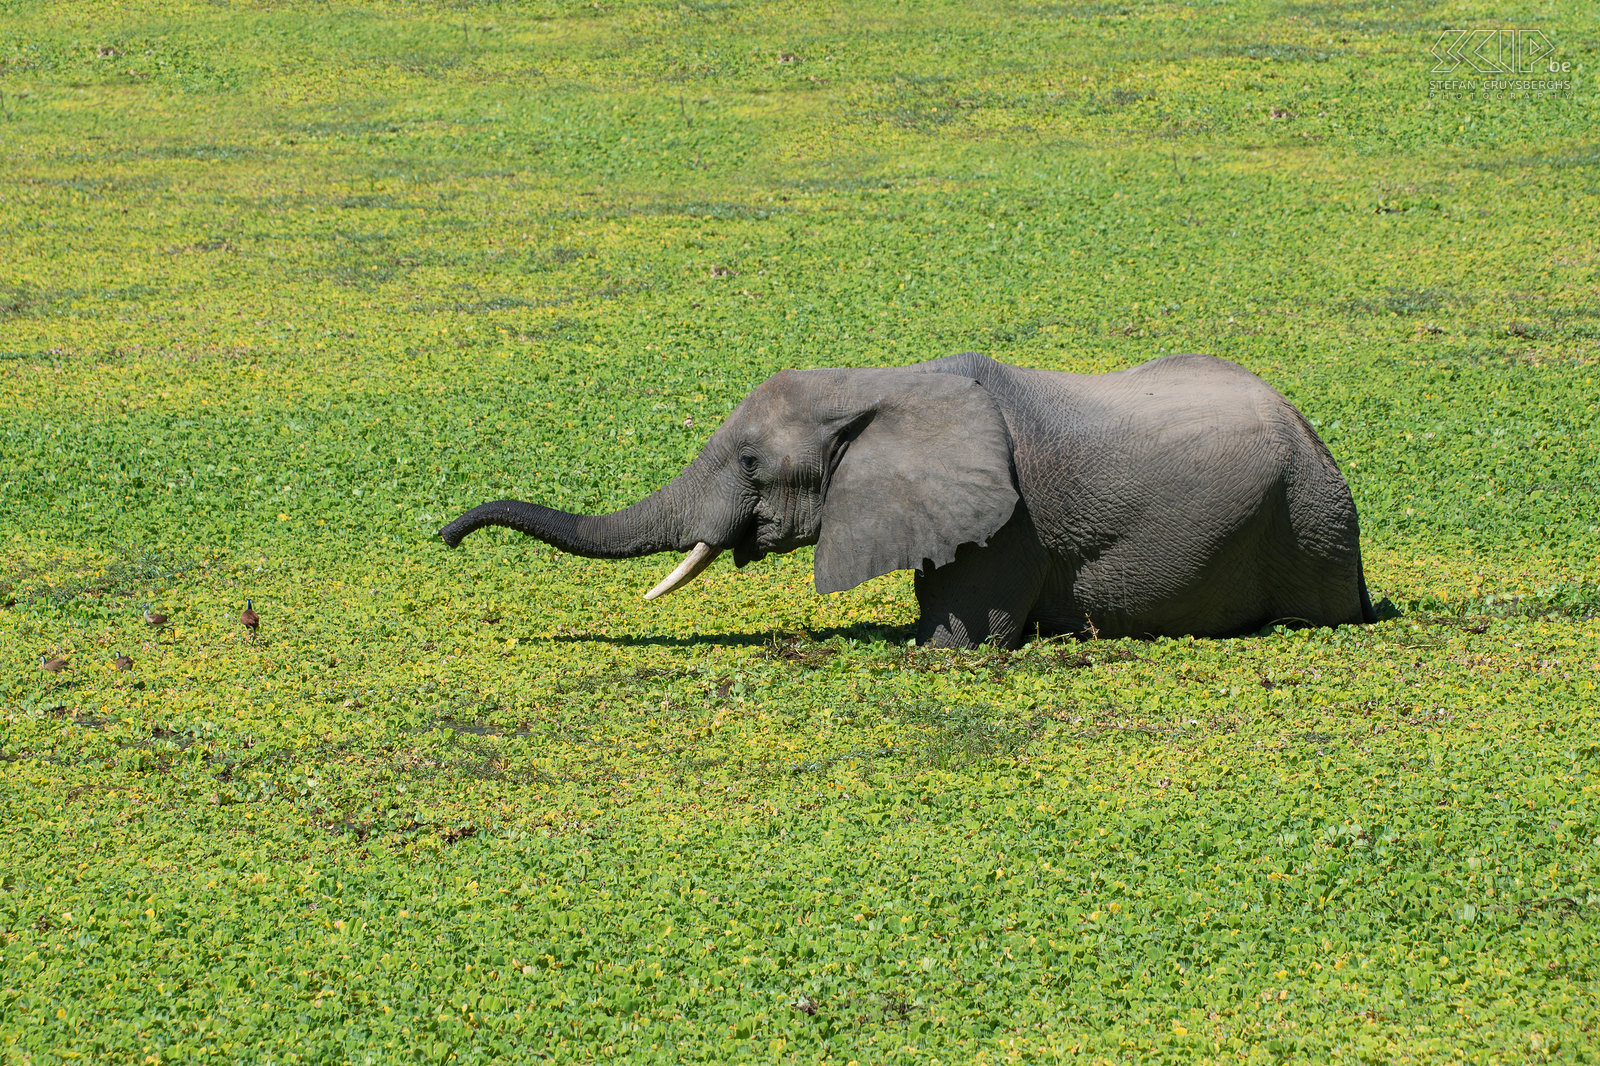 South Luangwa - Olifant Een olifant in een van de poelen vol Nijlsla in het prachtige nationale park South Luangwa in Zambia. De lelielopers (African jacana) lopen weg van hem. Stefan Cruysberghs